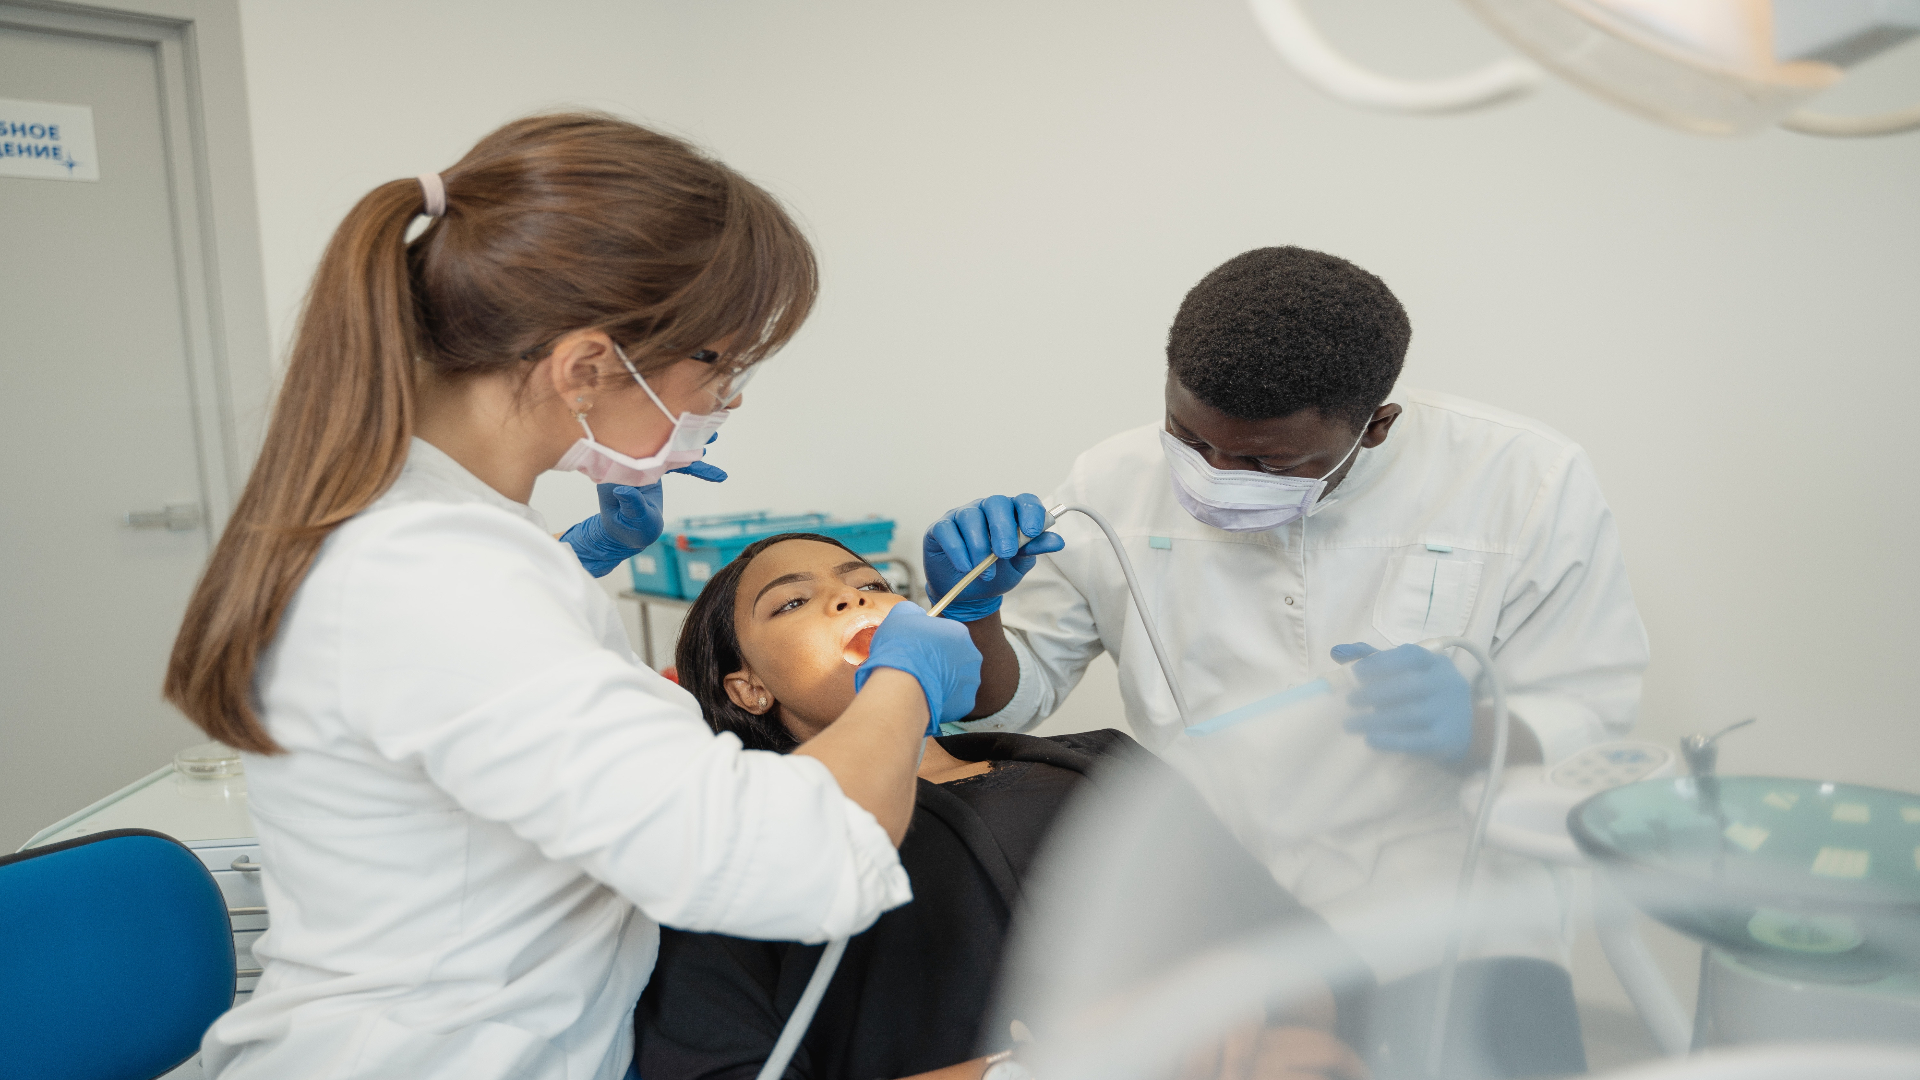 Foto de capa do artigo "Tártaro dental: o que é, o que causa e como tratar"